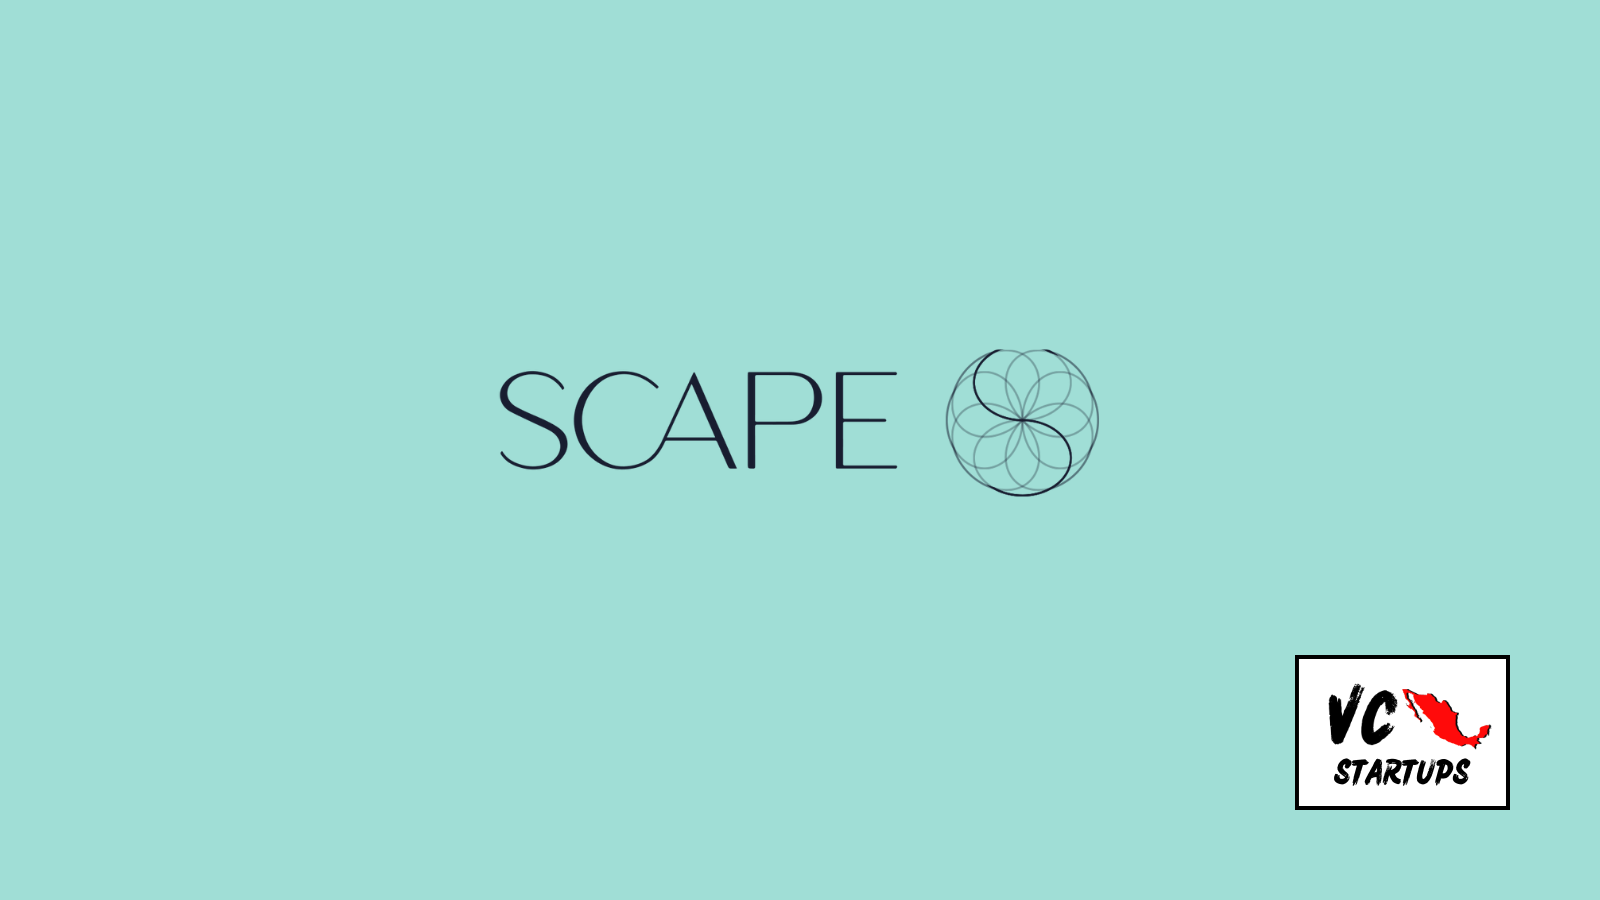 Startup Mx: SCAPE